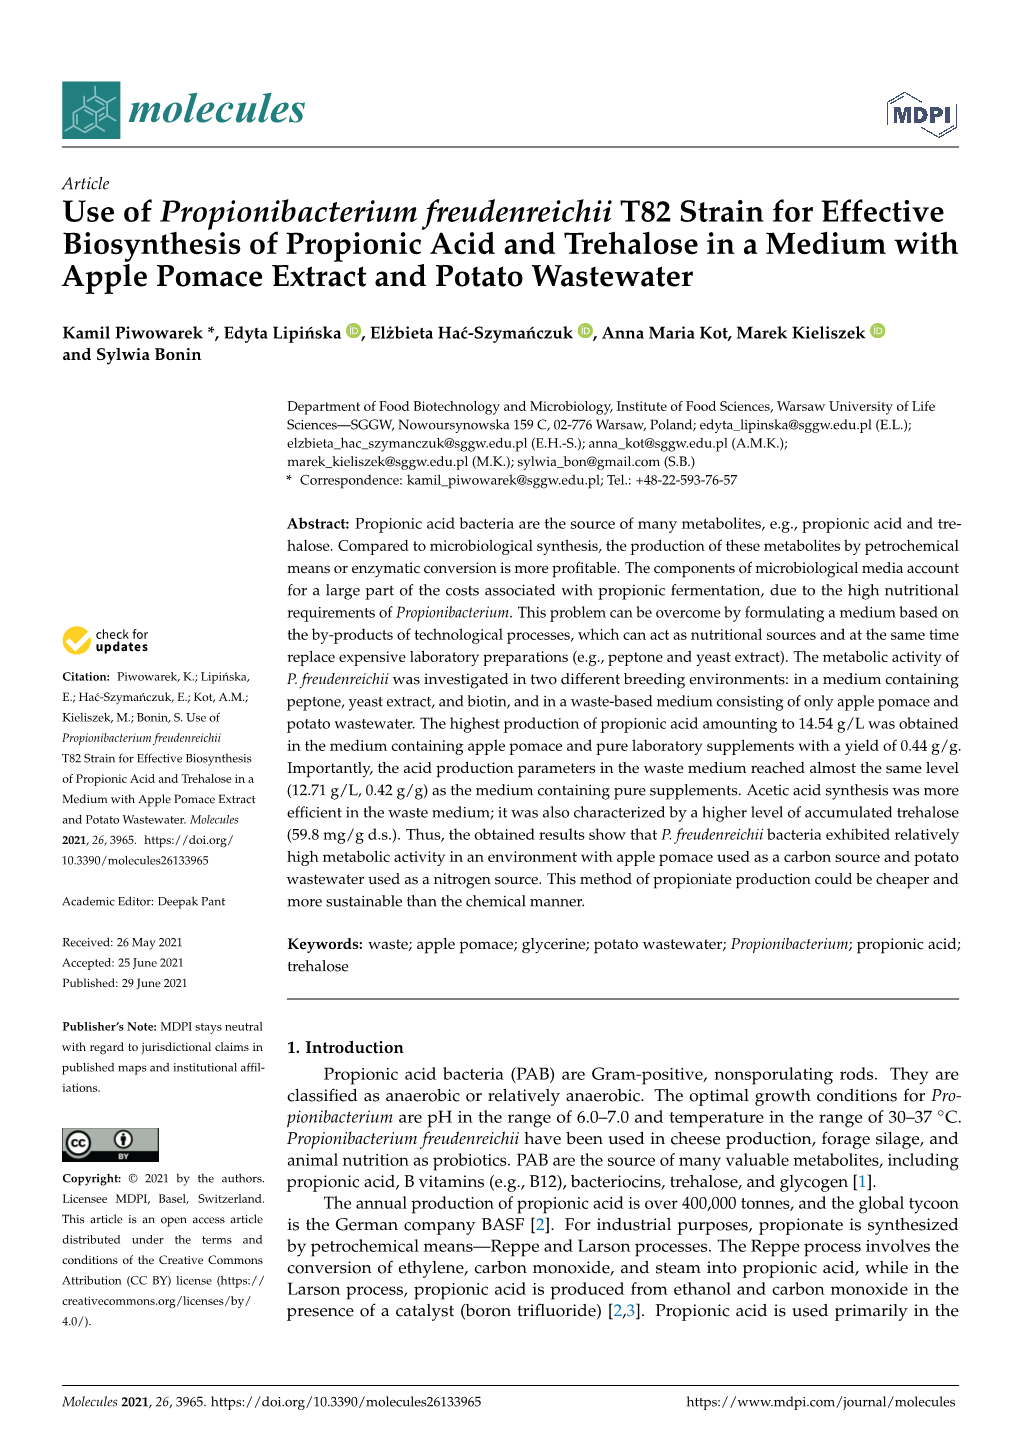 Use of Propionibacterium Freudenreichii T82 Strain For